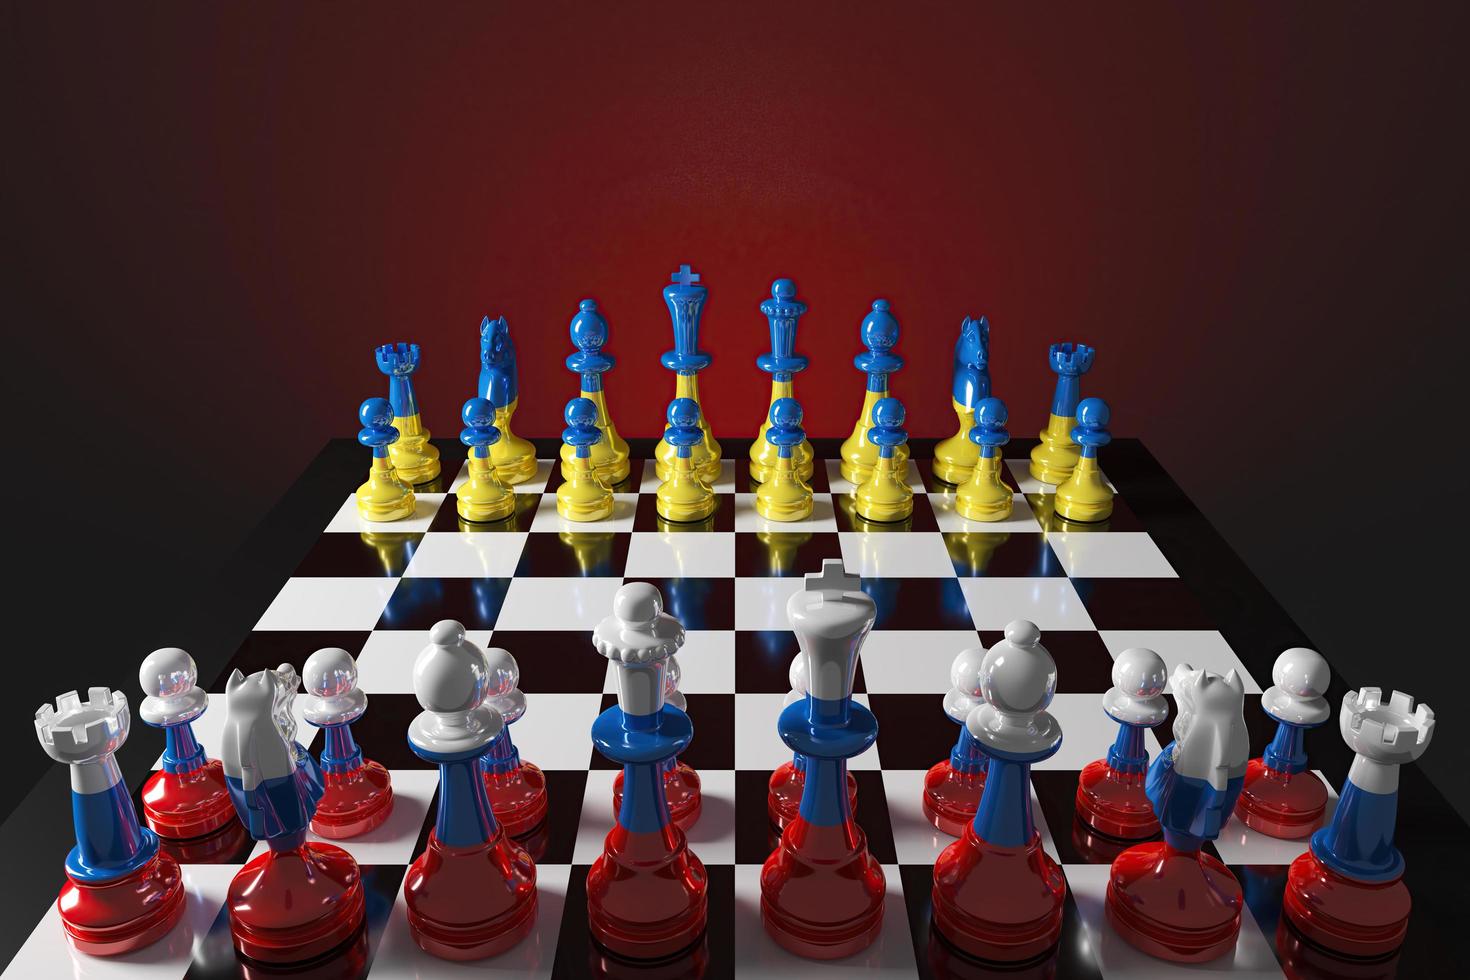 jeu d'échecs les pièces sont colorées avec des motifs ukrainiens et russes, reflétant le jeu politique international. rendu 3d photo